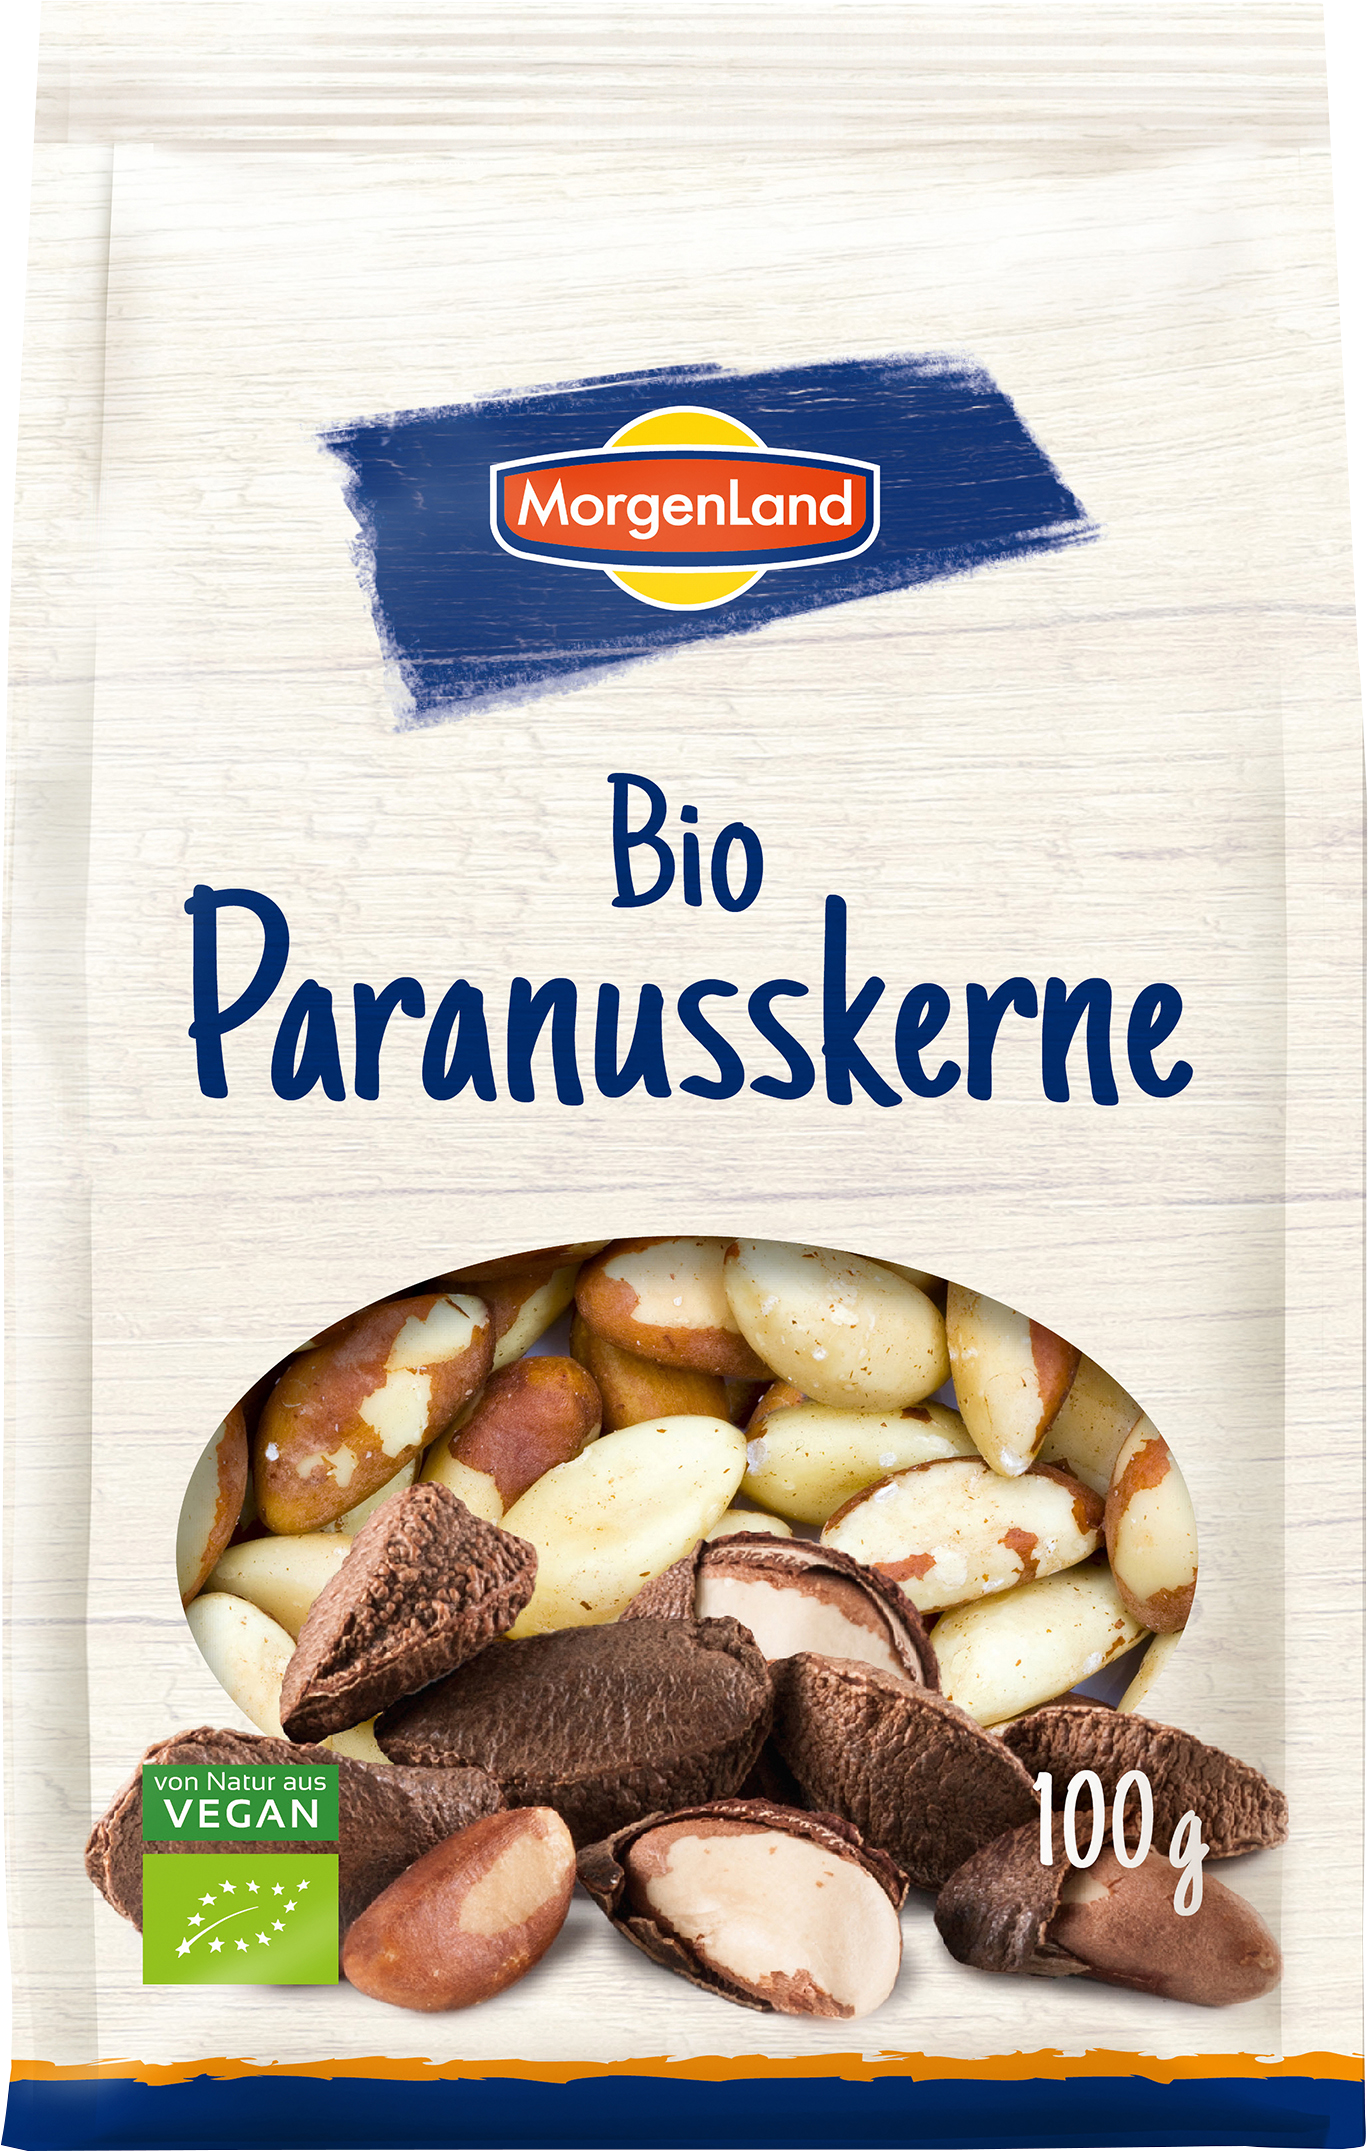 MorgenLand Paranusskerne 100g/nl